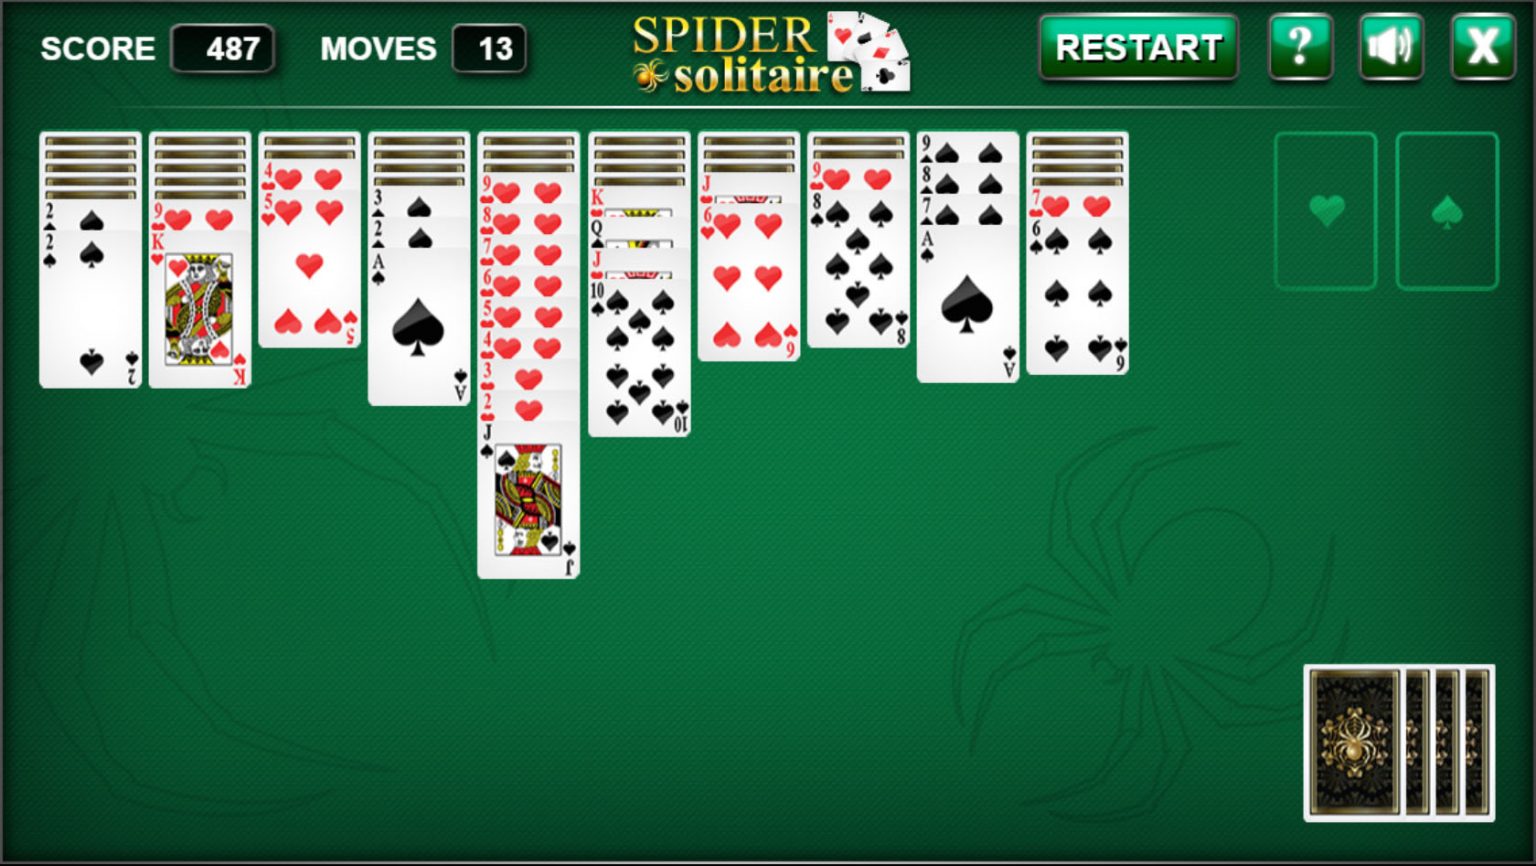 classic spider solitaire 4 suites